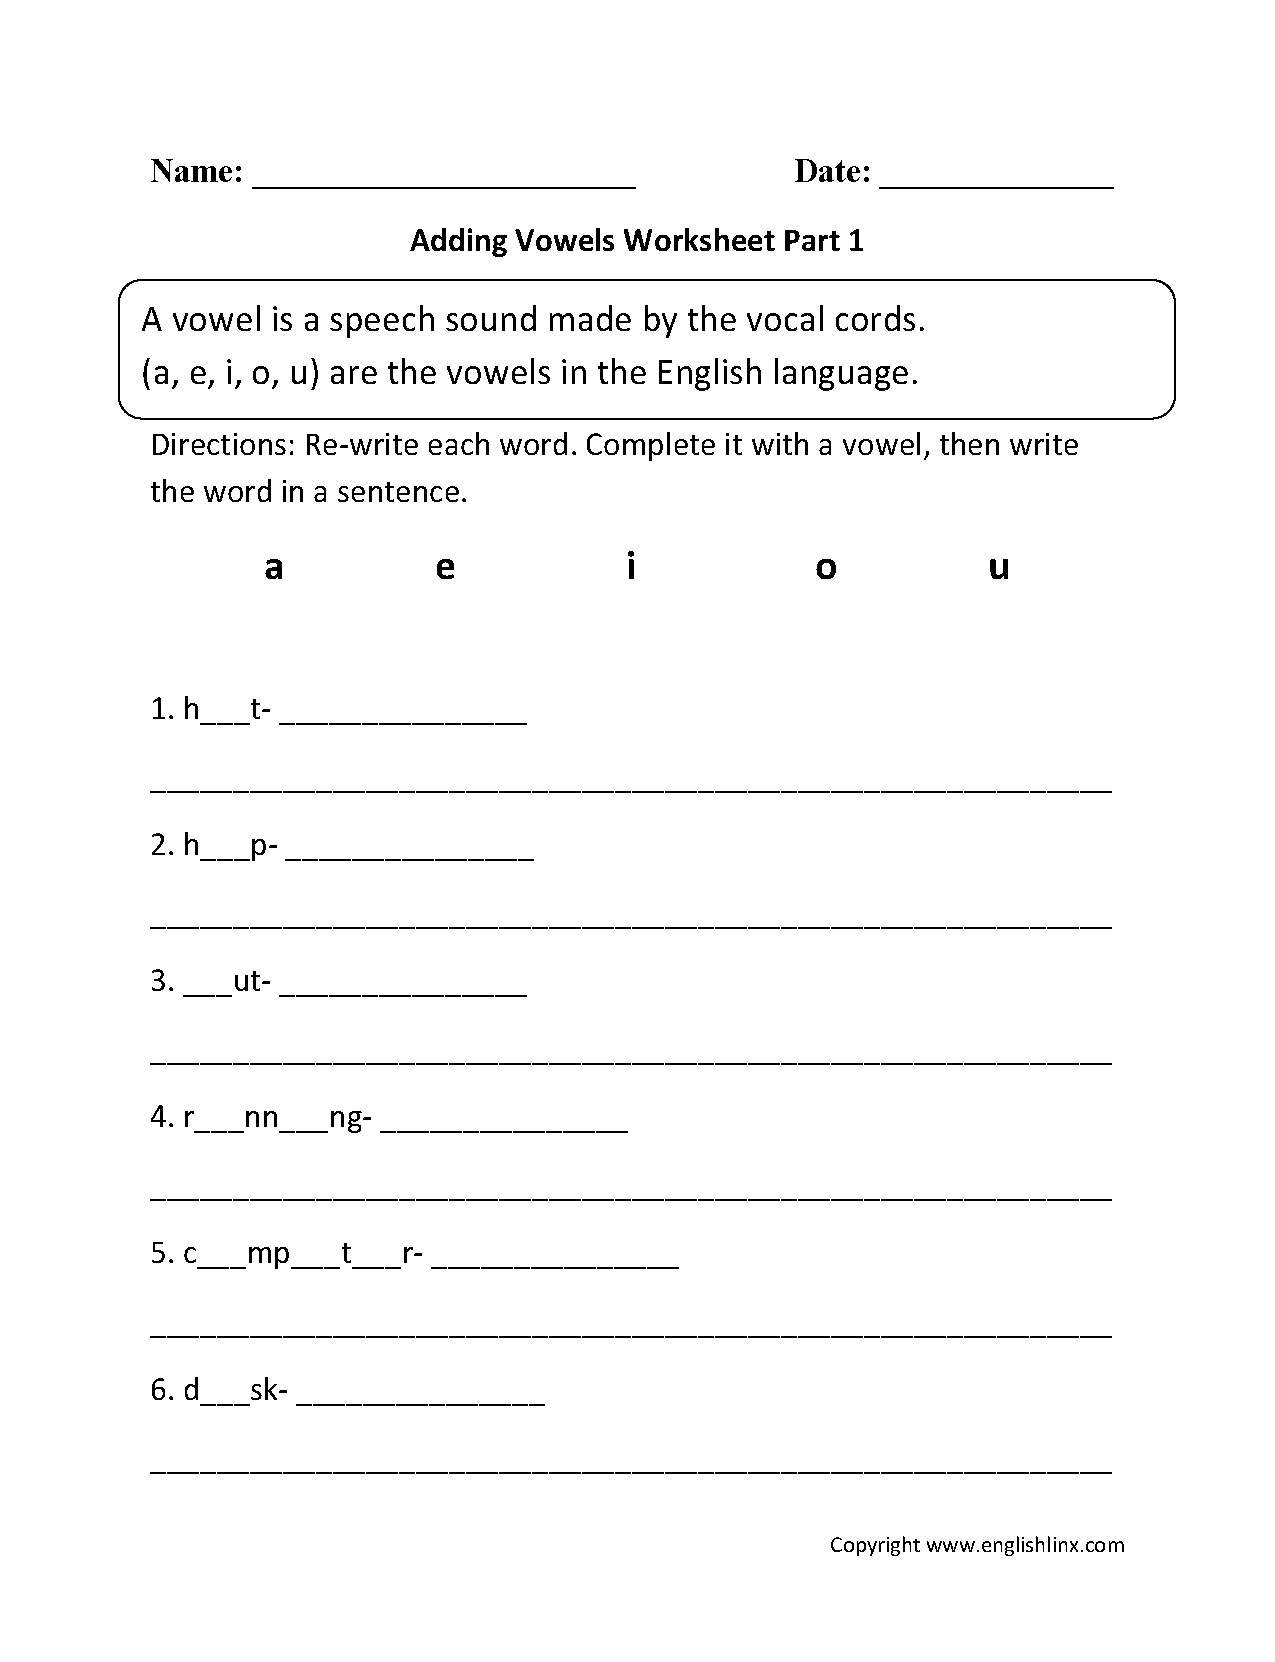 Adding Vowels Worksheet Part 1